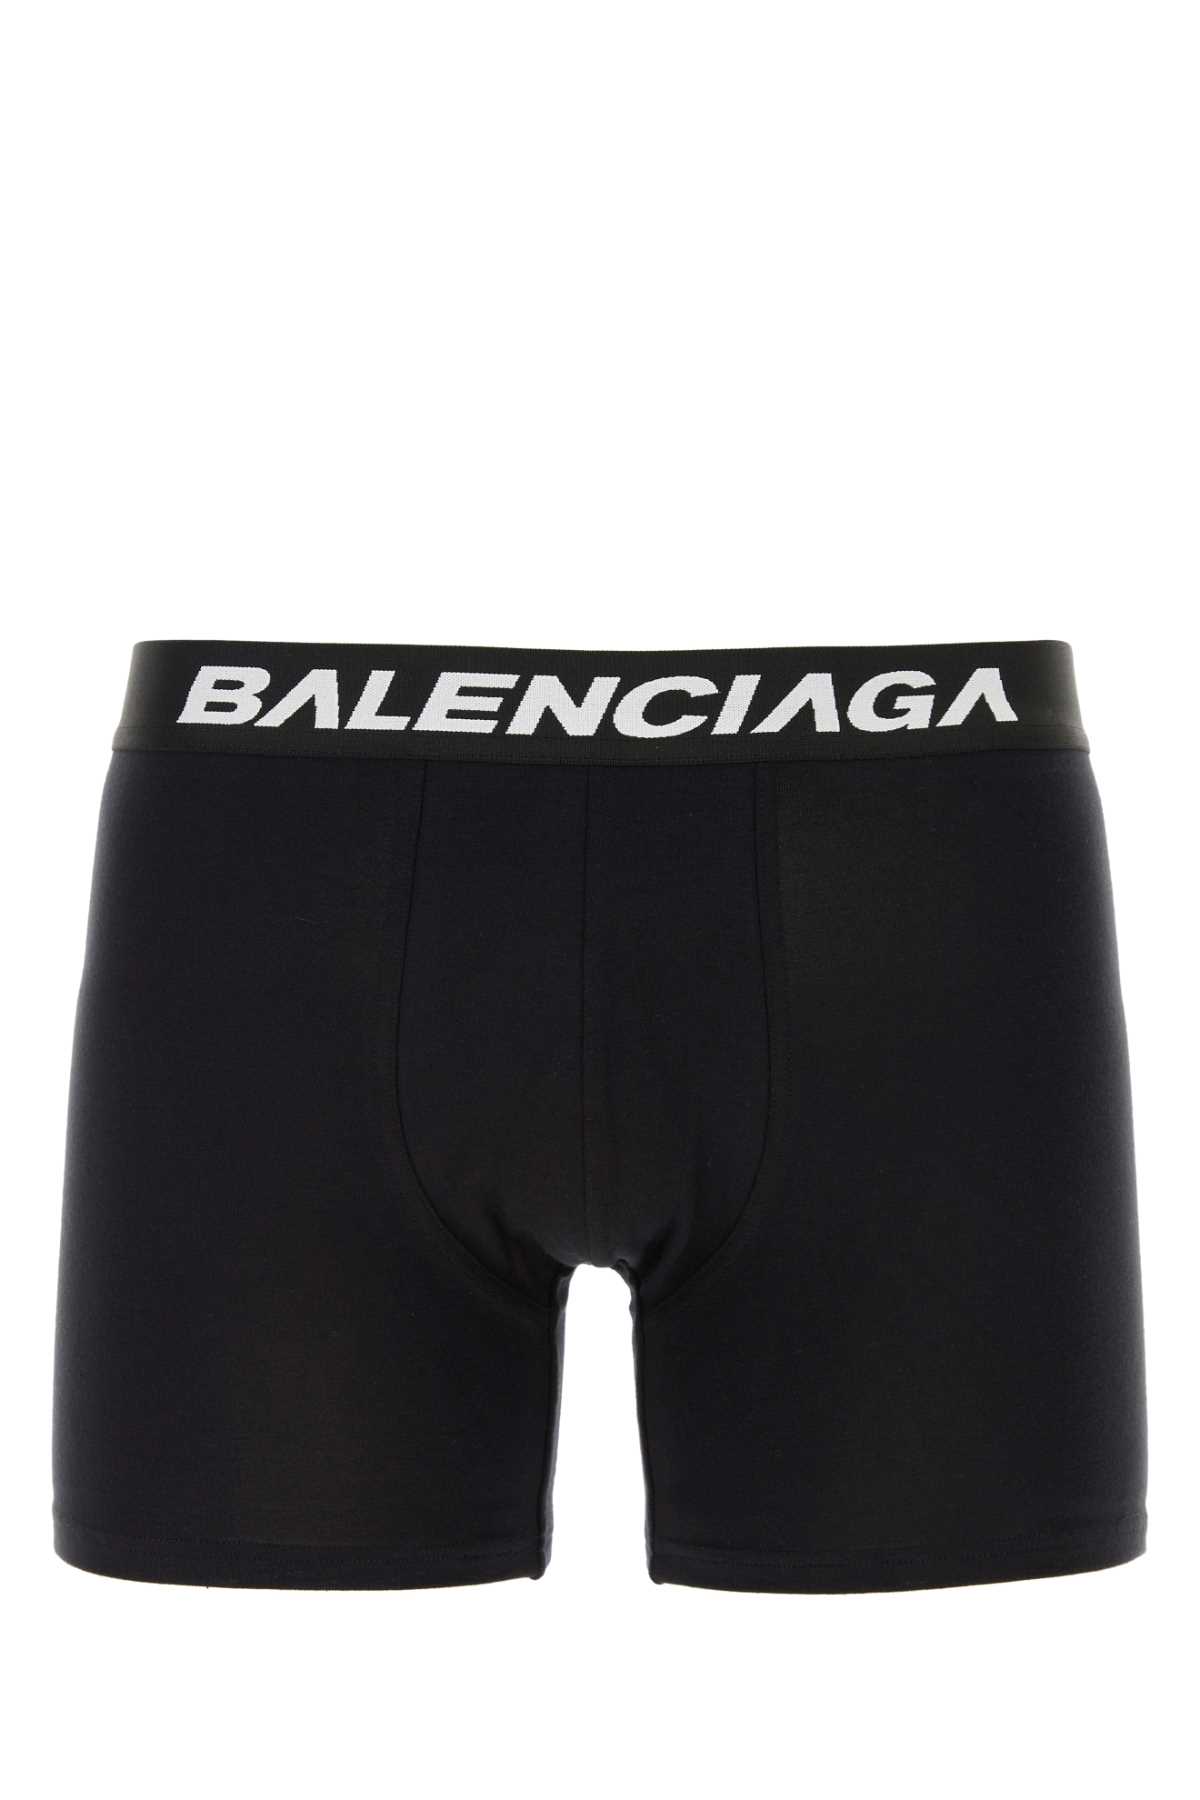 Shop Balenciaga Black Stretch Cotton Racer Boxer In Blackblack